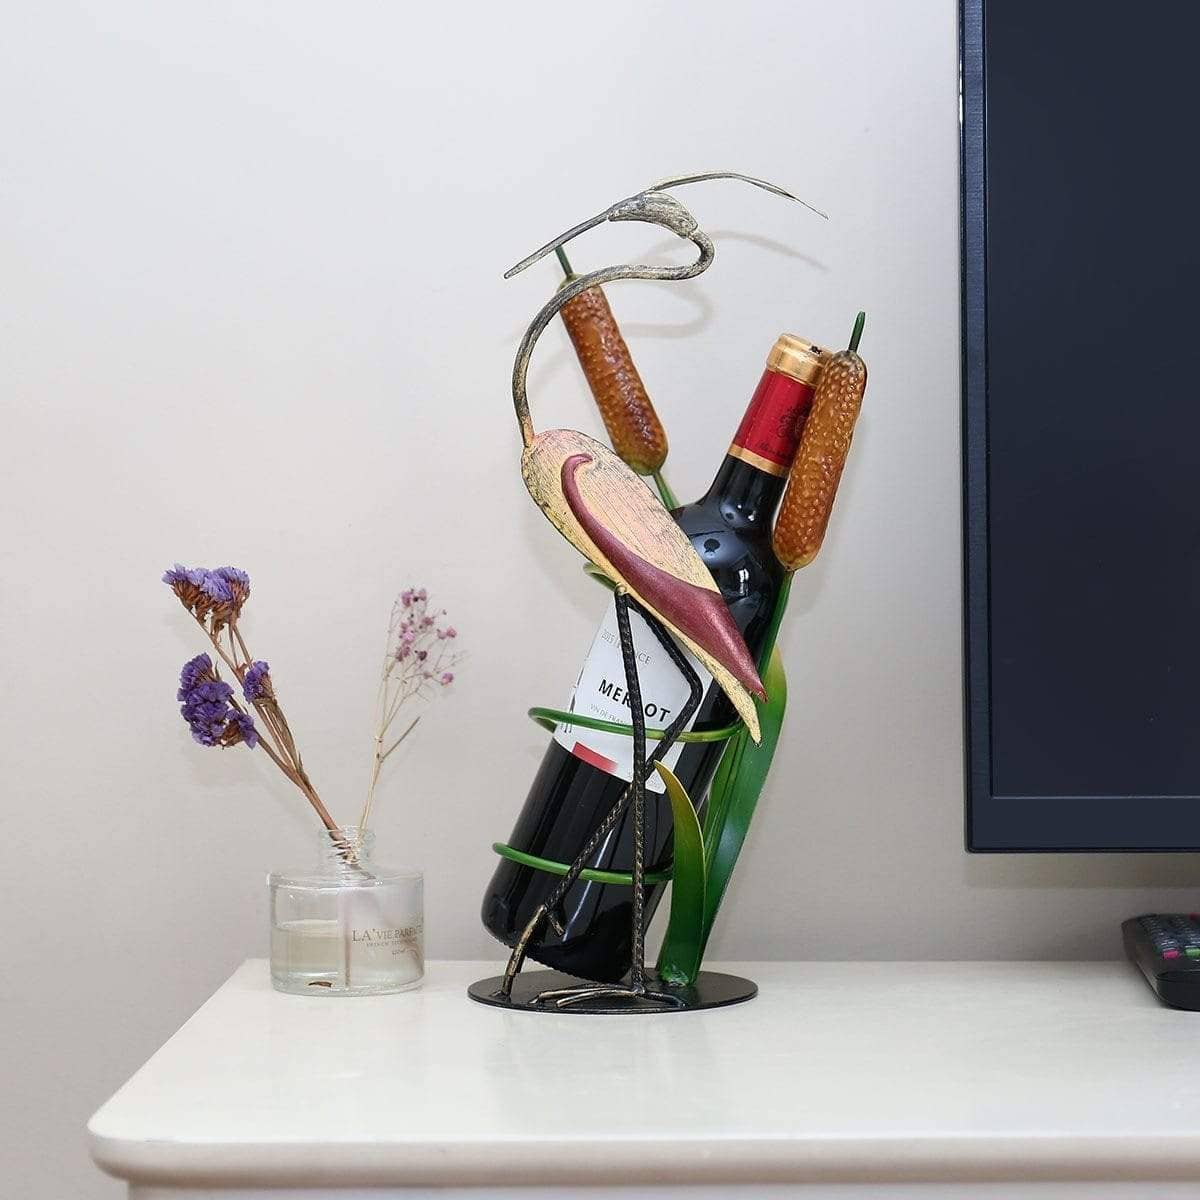 Wild Crane Wine Bottle Holder Stand - Modern & Stylish Rack for Wine Storage